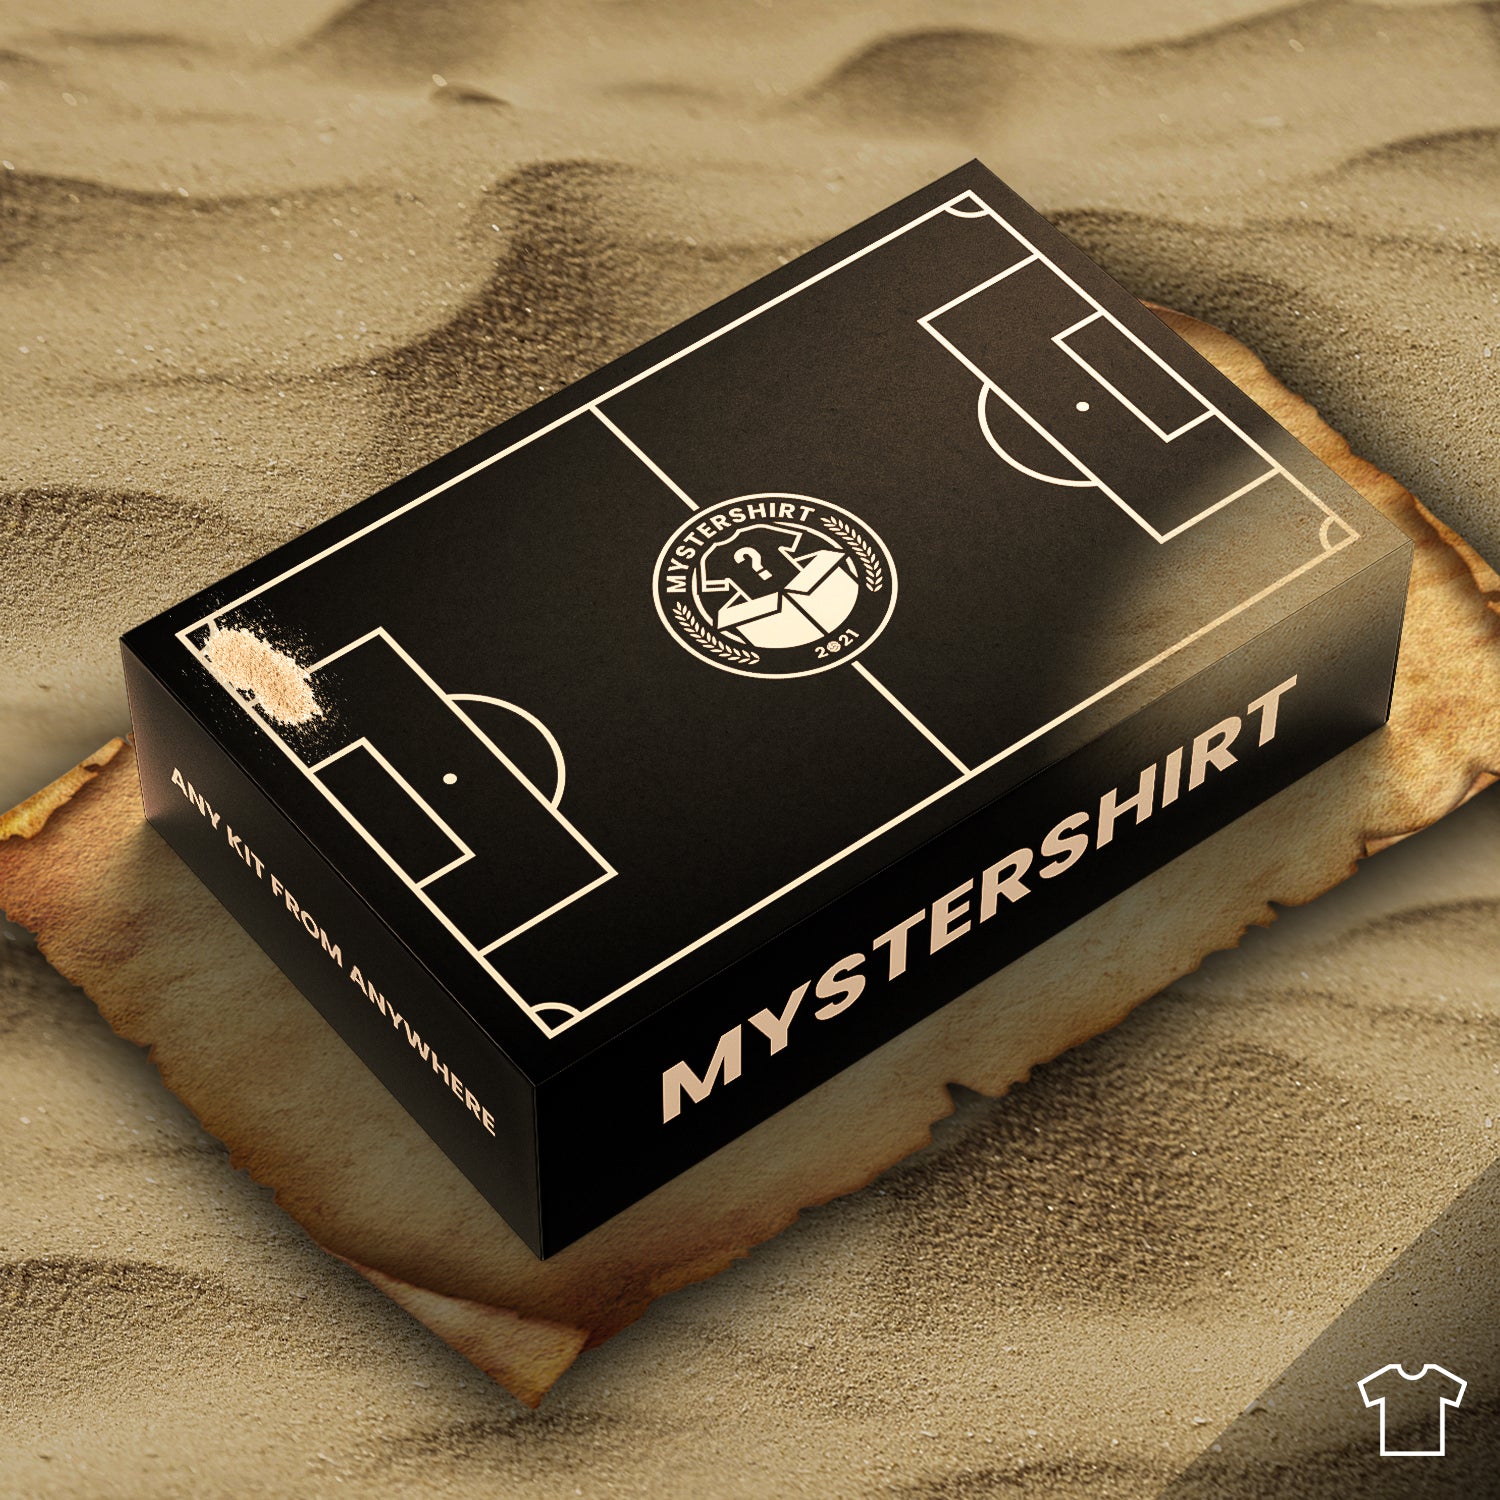 Retro Voetbalshirt Mystery Box